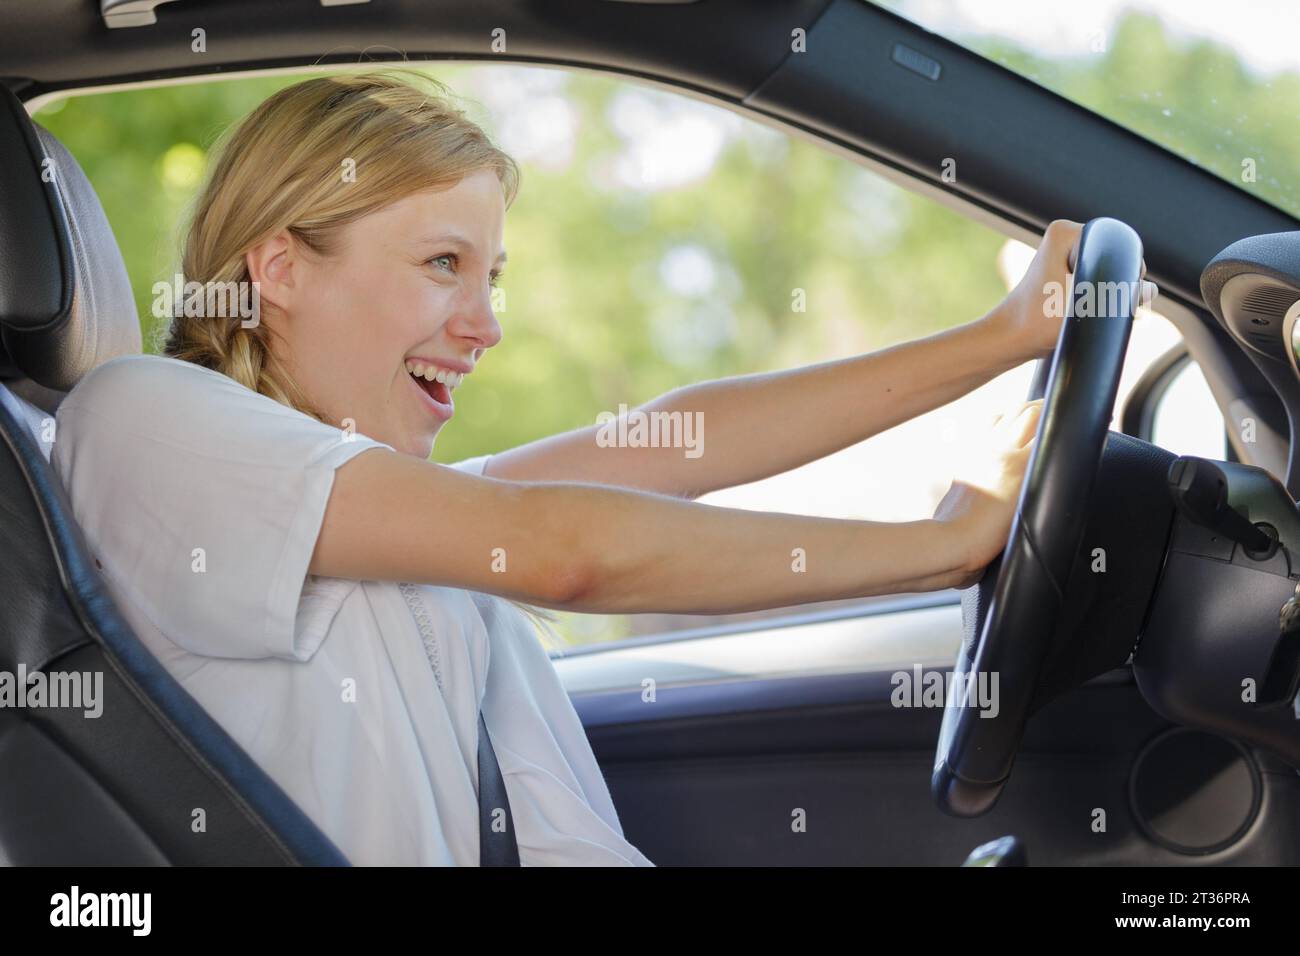 Frau Fahrer Hand hupen ihr Auto Hupe, um Unfall zu verhindern